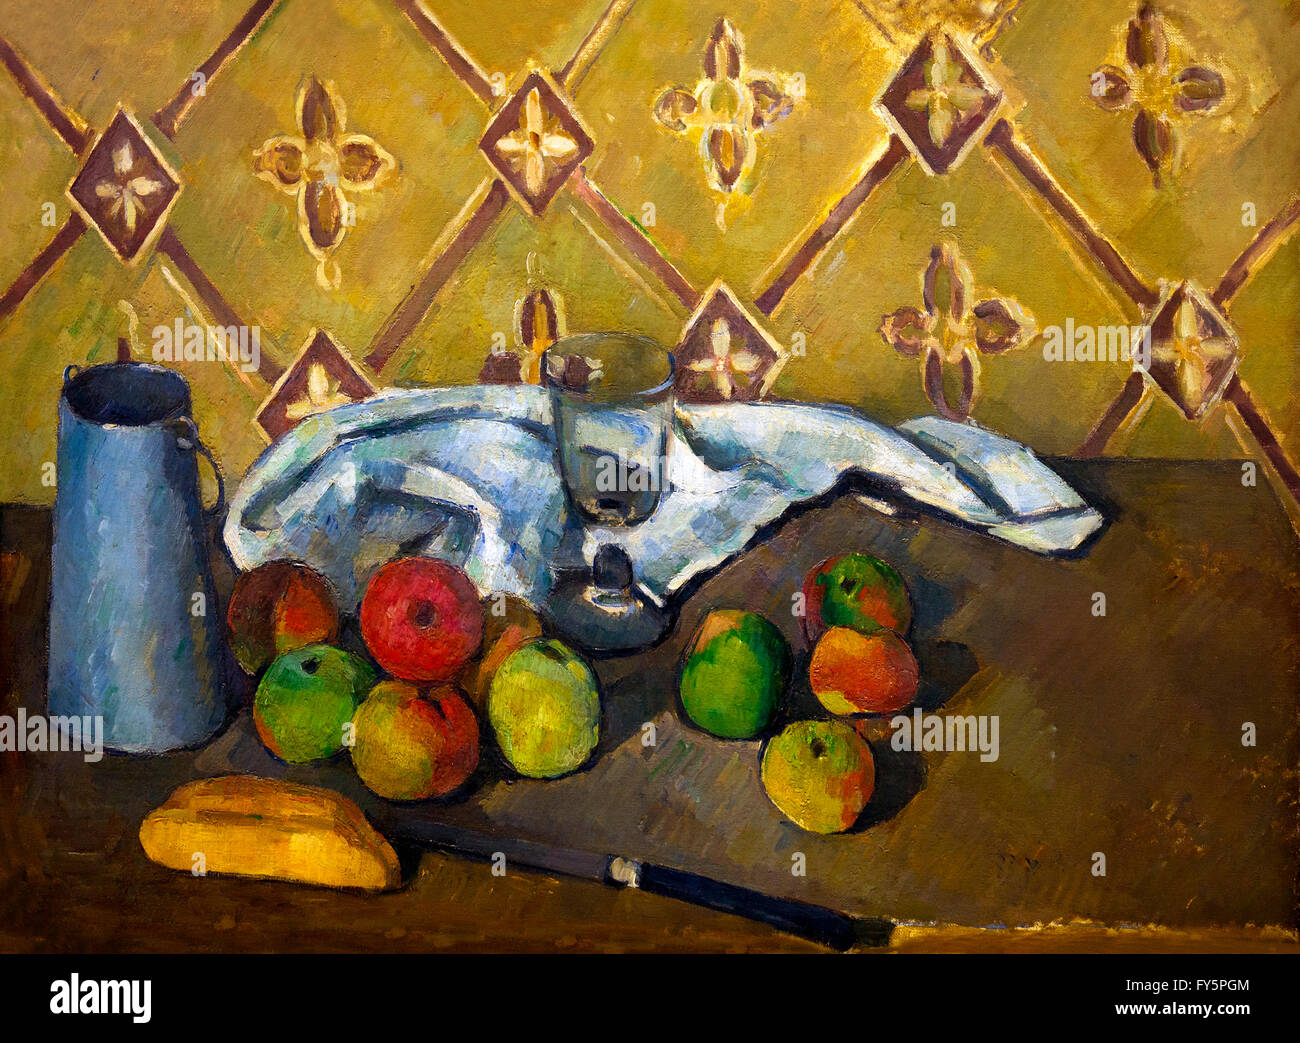 Frutta, igienico e la brocca del latte, frutta, salvietta et boite un lait di Paul Cezanne, 1880-81, il Musee de L'Orangerie, Parigi, Francia, Foto Stock